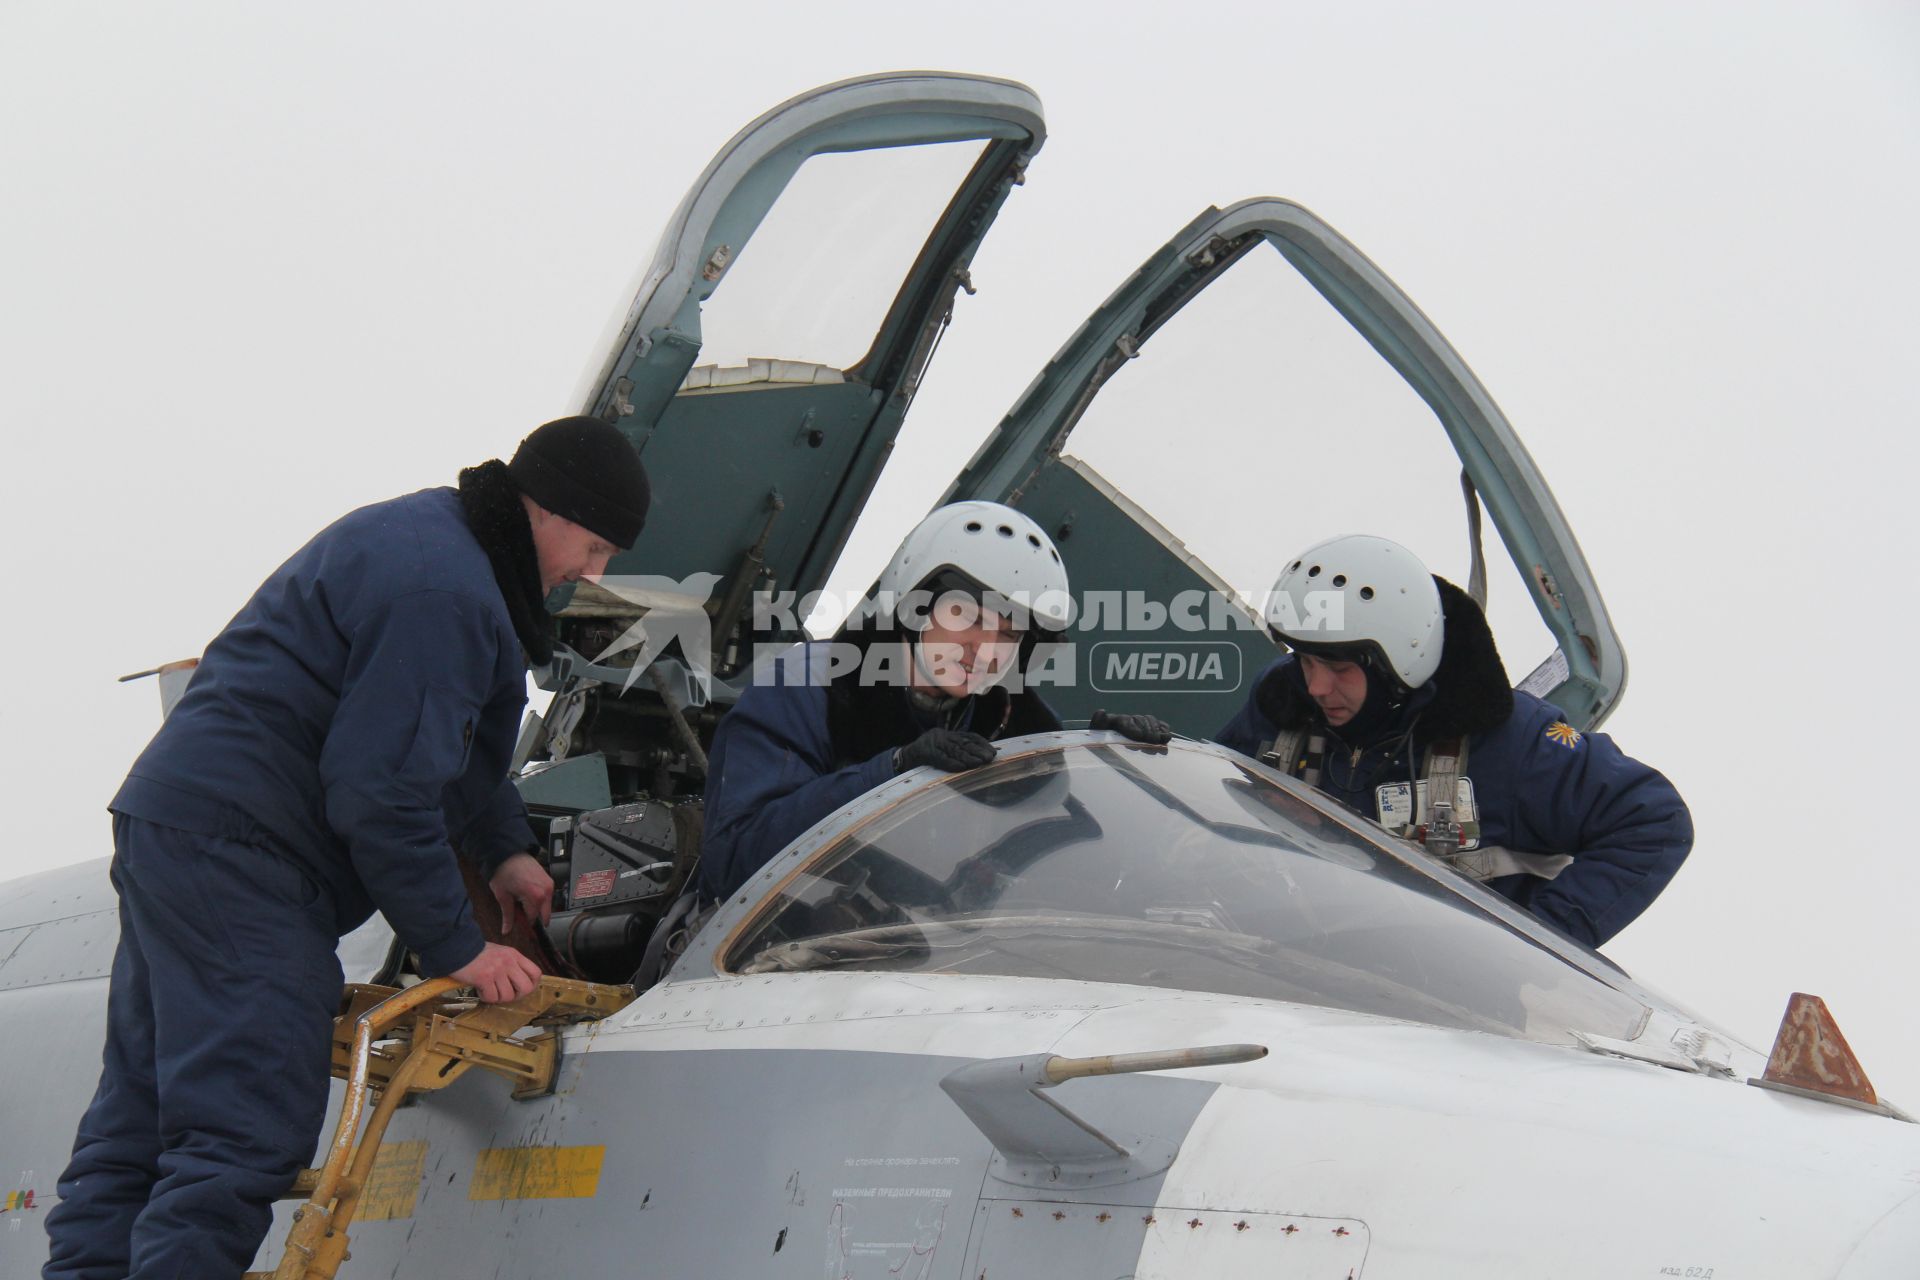 Пилоты садятся в кабину фронтового бомбардировщика  СУ-24М, рядом стоит техник.